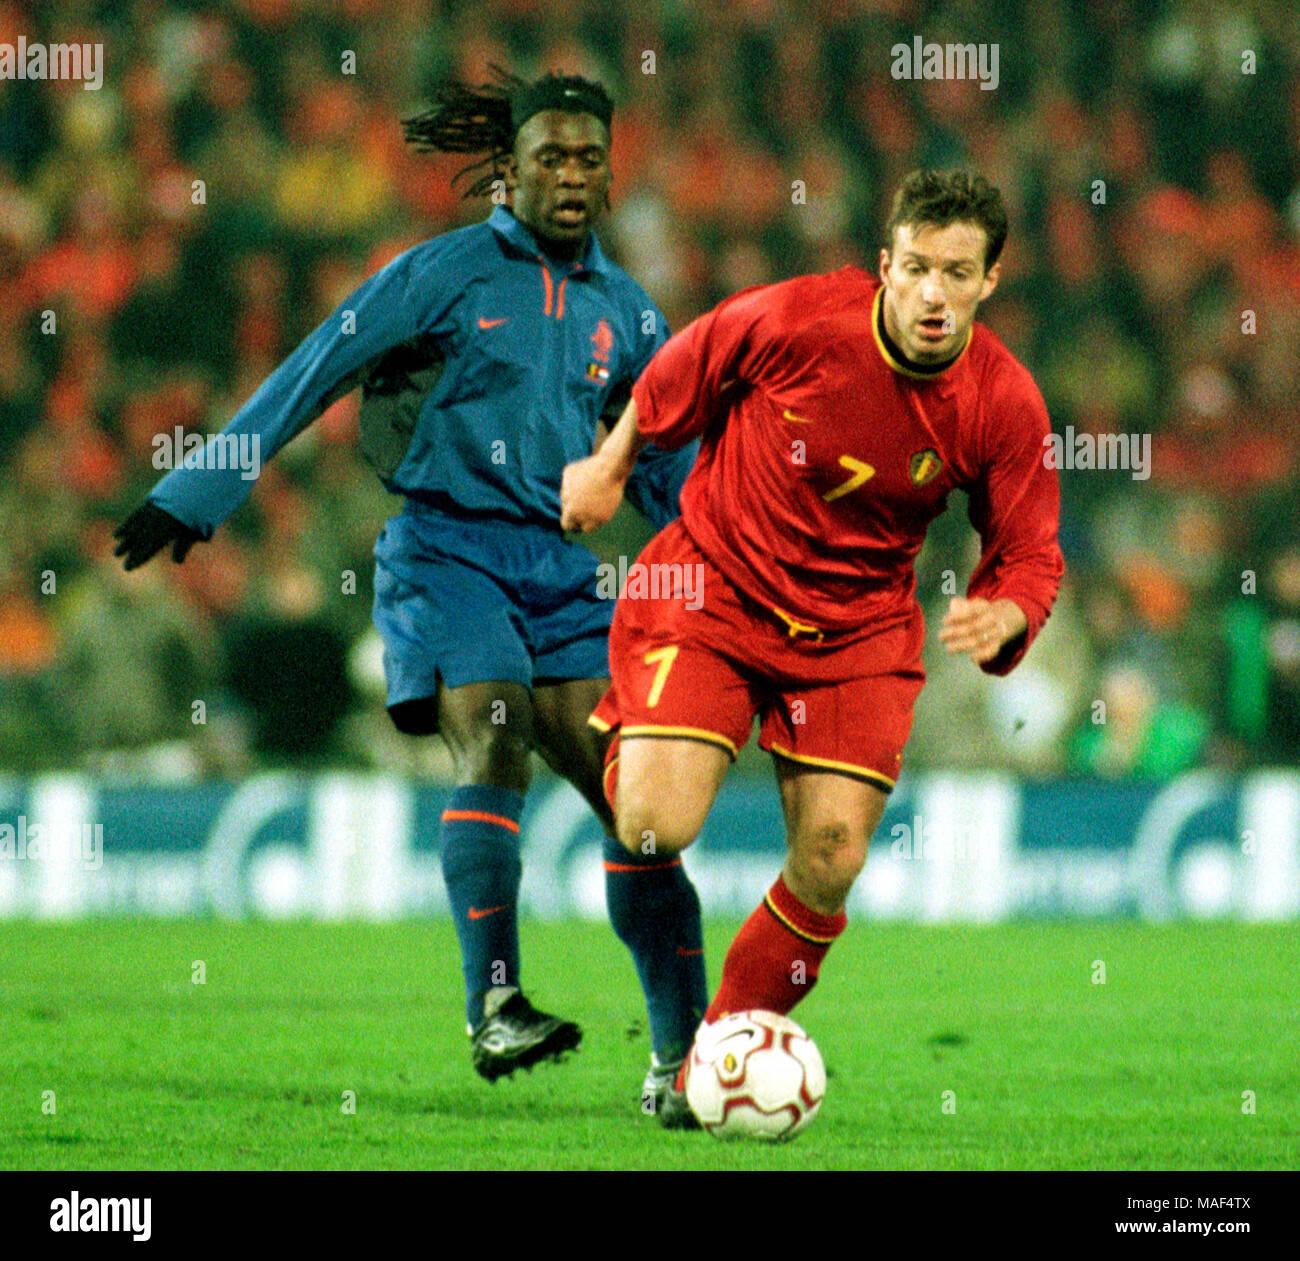 Stade Roi Baudouin Bruxelles, Belgique 29.3.2000, Football, match amical : le Belgique contre les Pays-Bas 2:2 --- Marc WILMOTS (BEL), Clarence Seedorf (NED) Banque D'Images